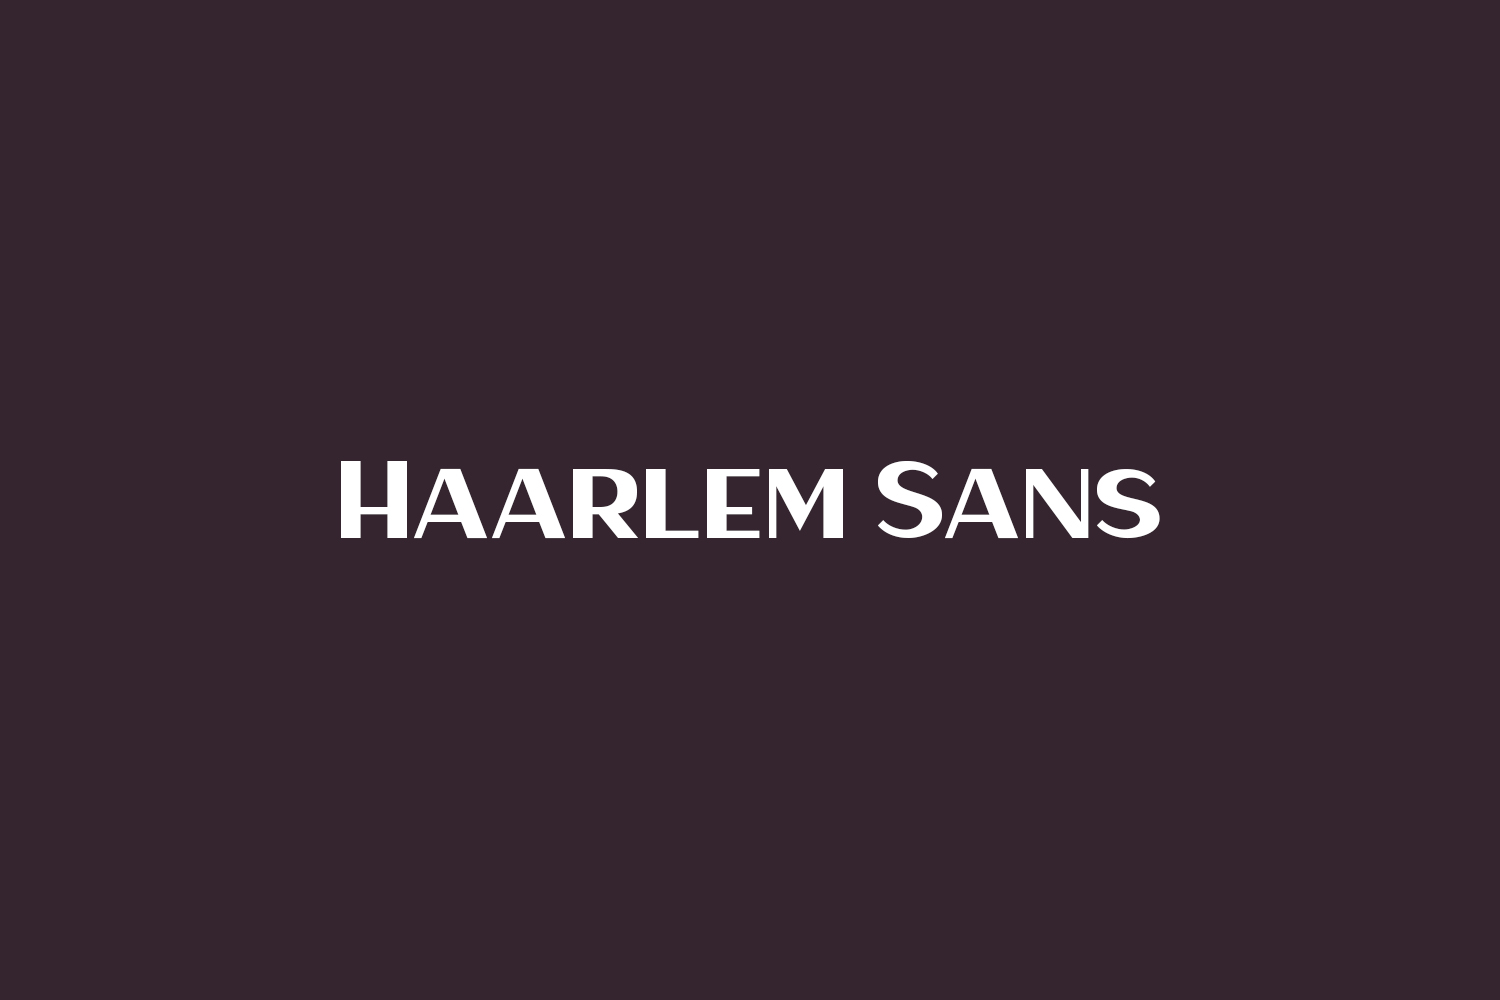 Haarlem Sans Free Font